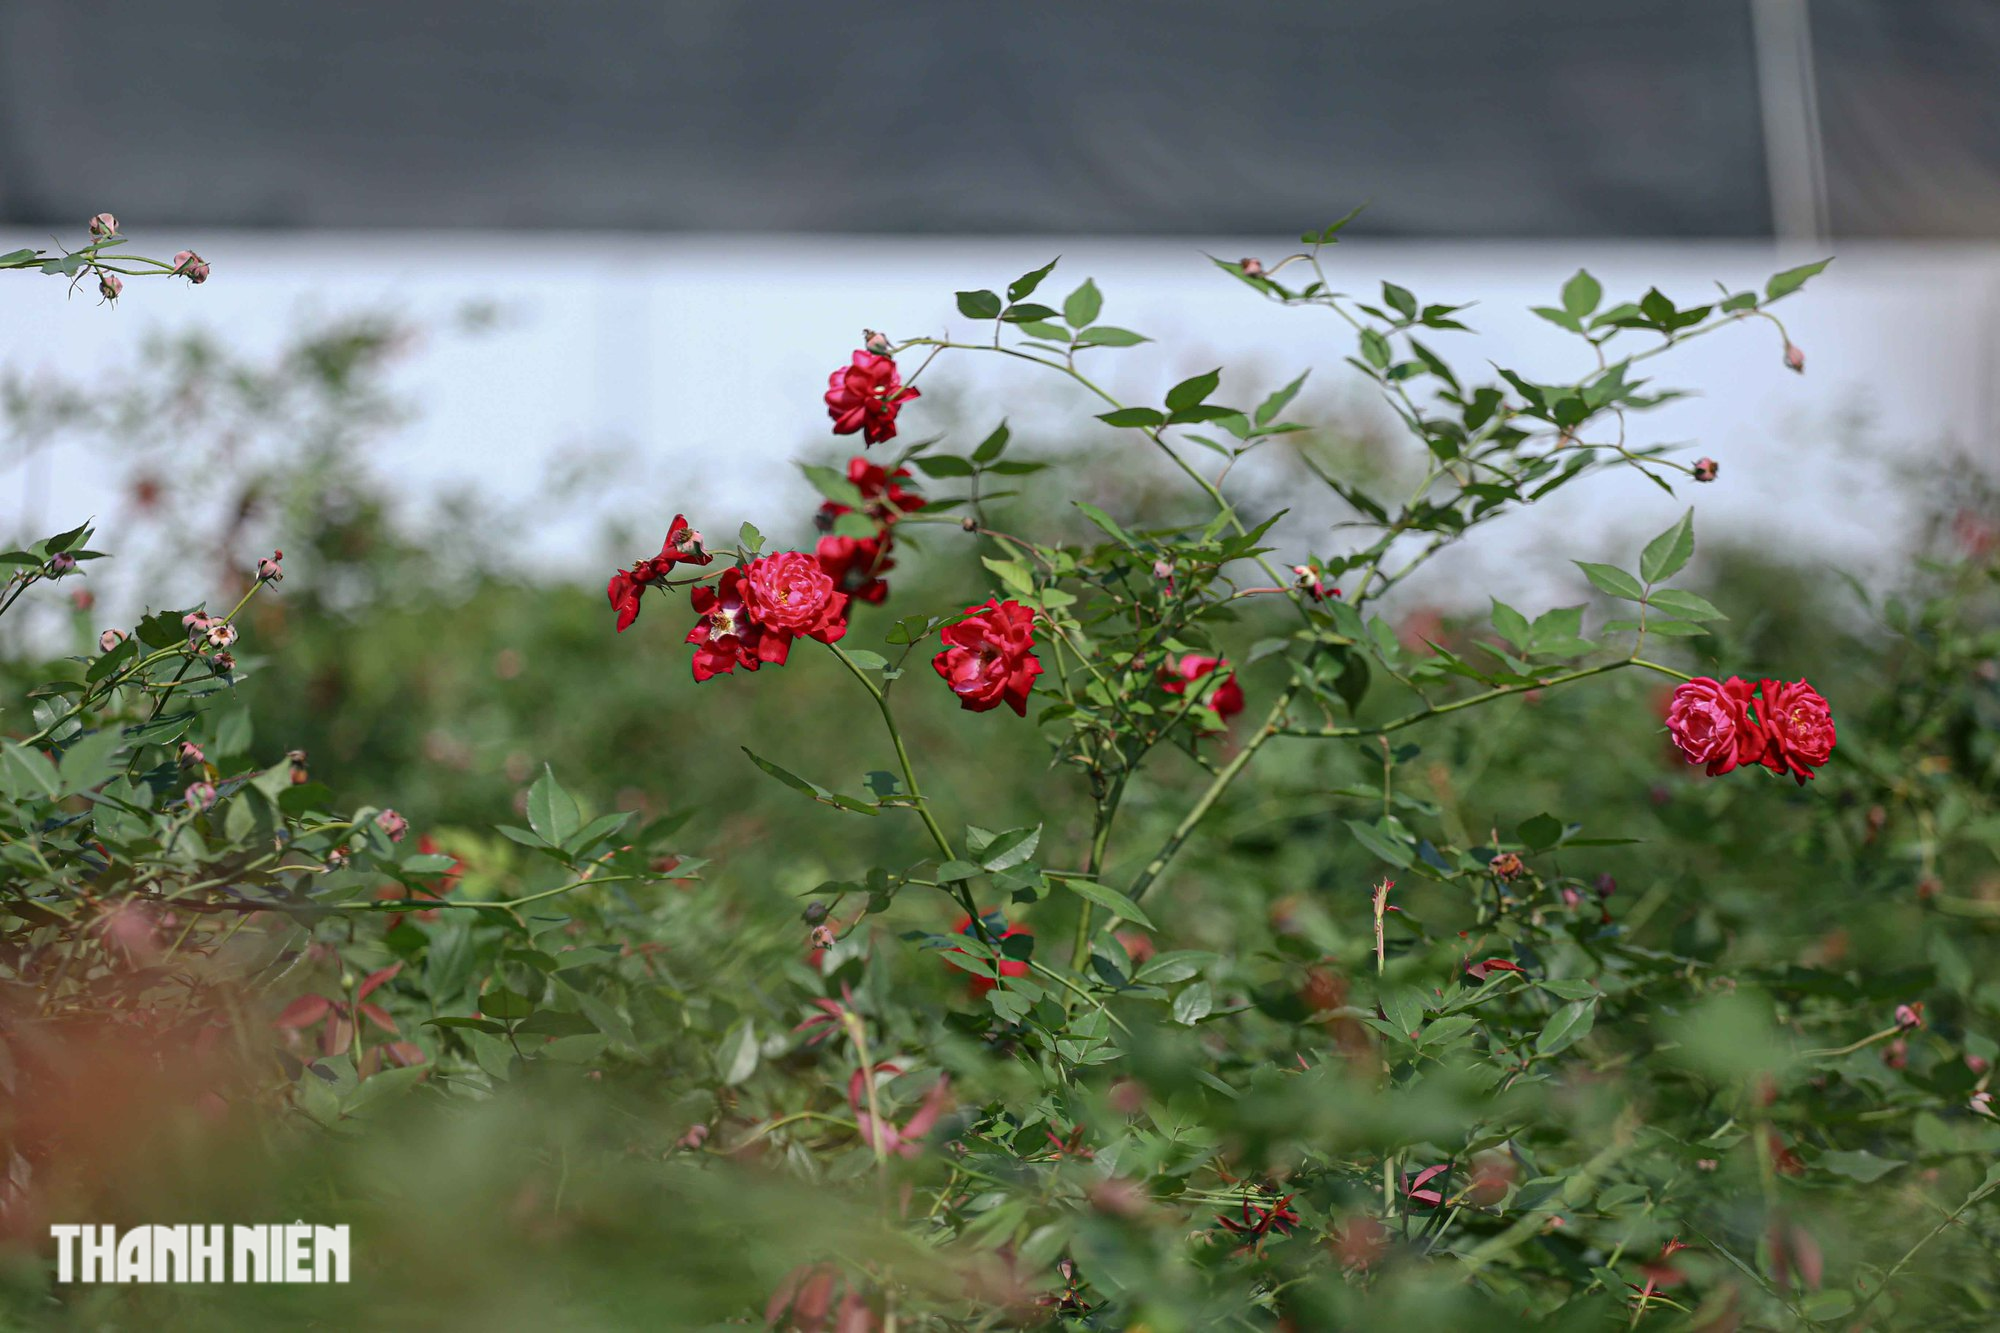 Giống hoa này cho hoa màu đỏ rất rực rỡ, cánh hoa đỏ đậm ở ngoài và có màu hồng sáng ở giữa, hương thơm ngọt dễ chịu với chu kỳ nở 40 ngày.